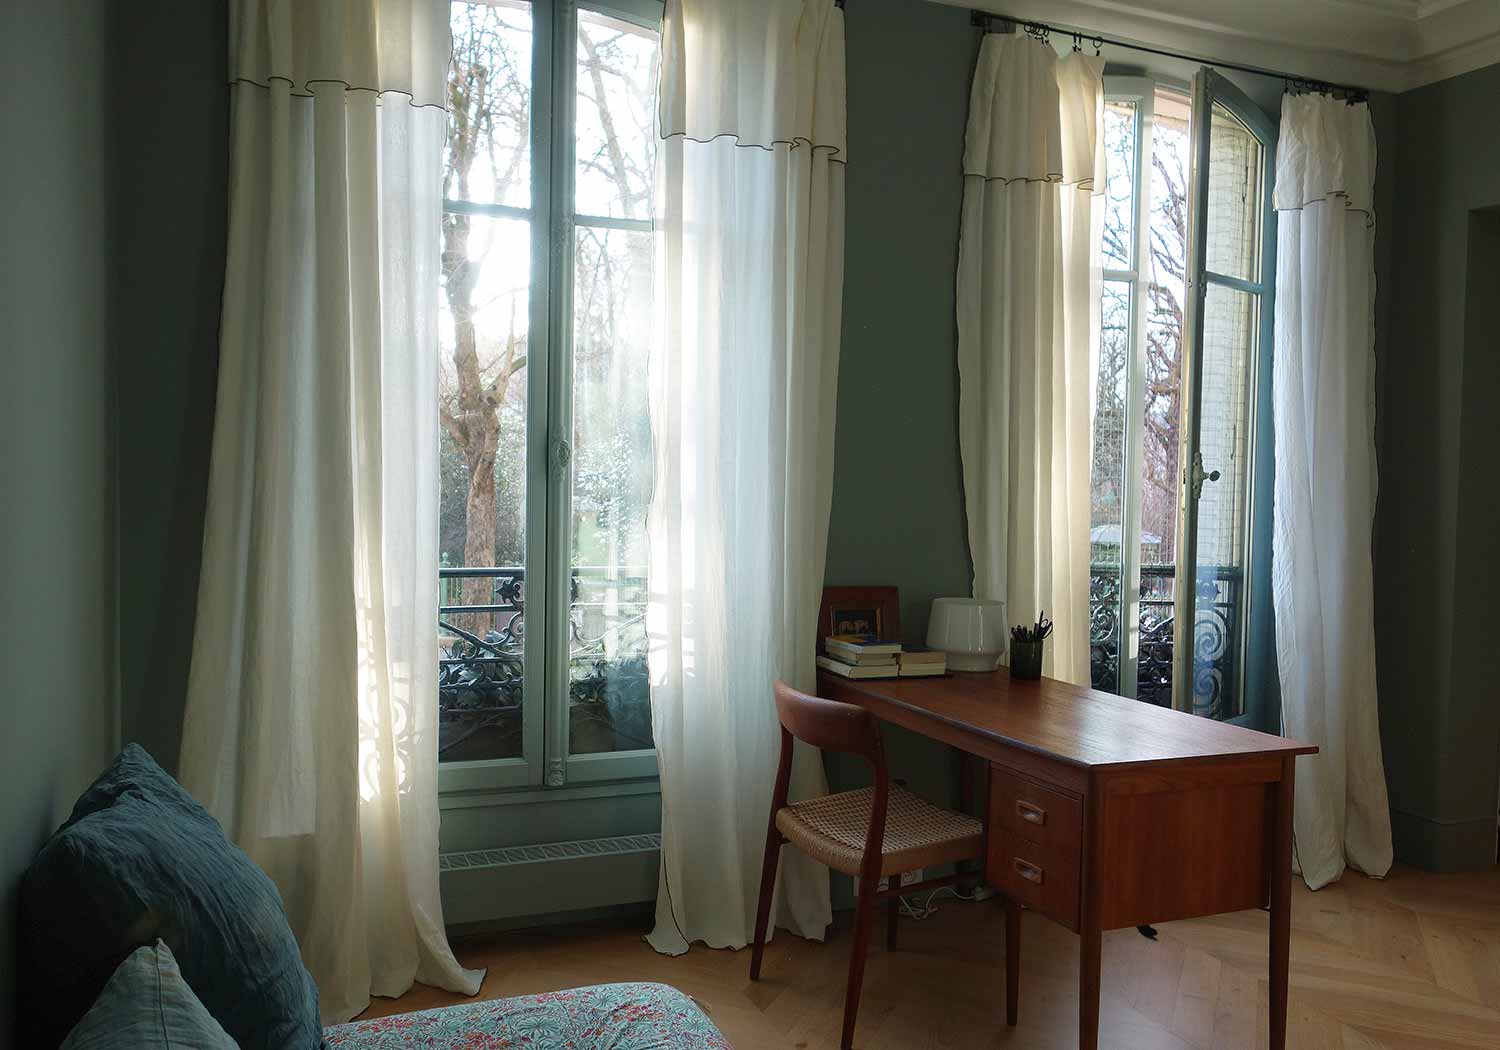 On aime l'équilibre de ce bureau/petit salon induit par la parfaite symétrie des fenêtres